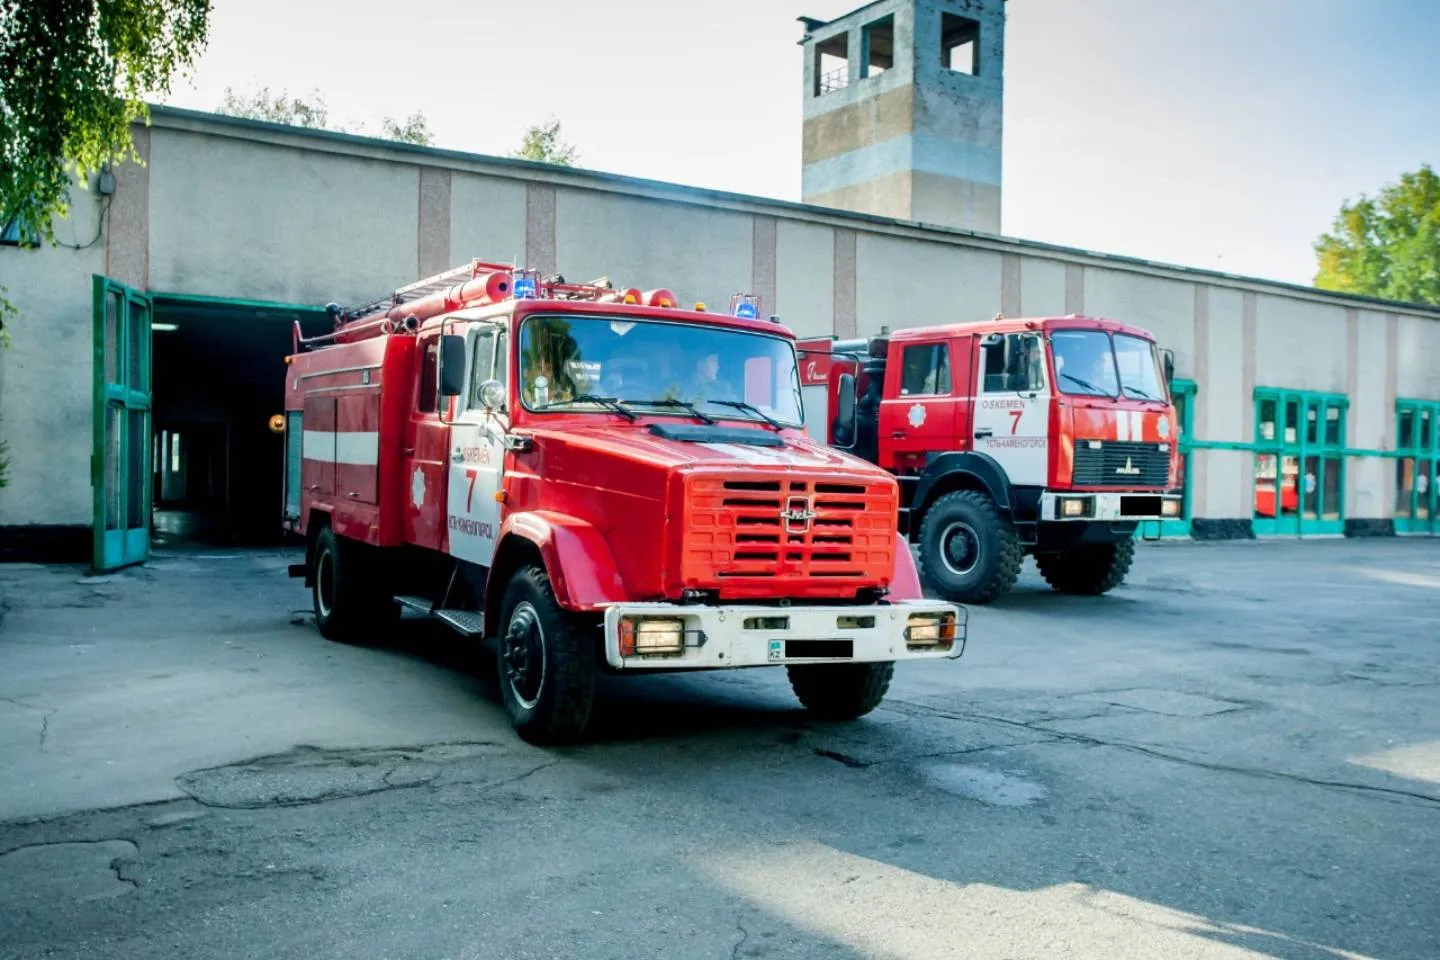 Усть-Каменогорск и ВКО / Сегодня в Усть-Каменогорске произошел пожар, спасатели эвакуировали людей